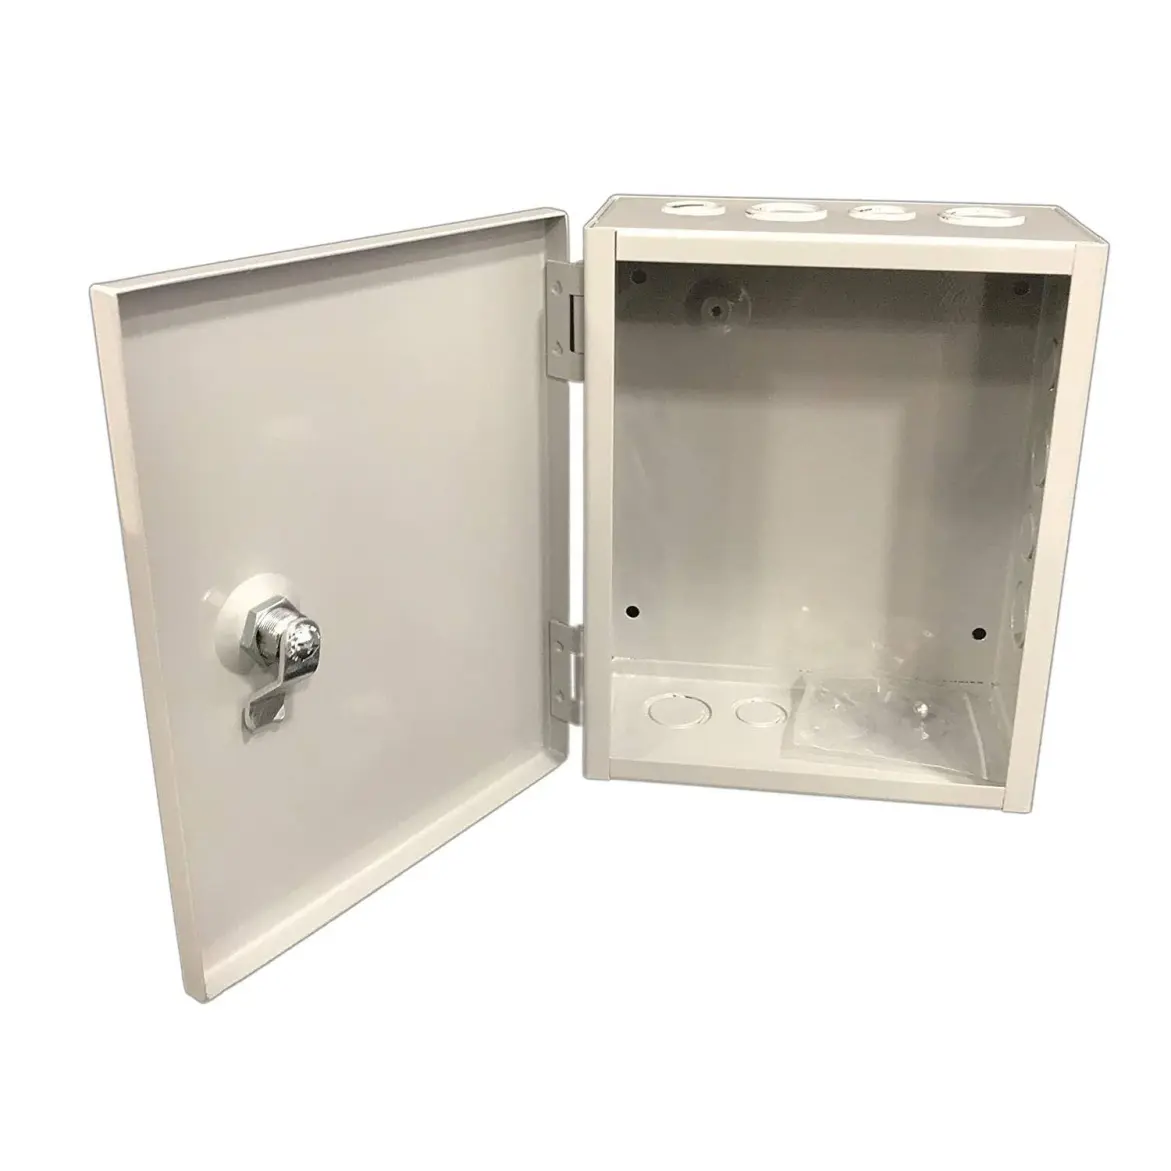 Produttore misuratore scatola armadietto elettrico interruttore aria scatola di controllo elettrico fornitori di fabbricazione in lamiera di alluminio